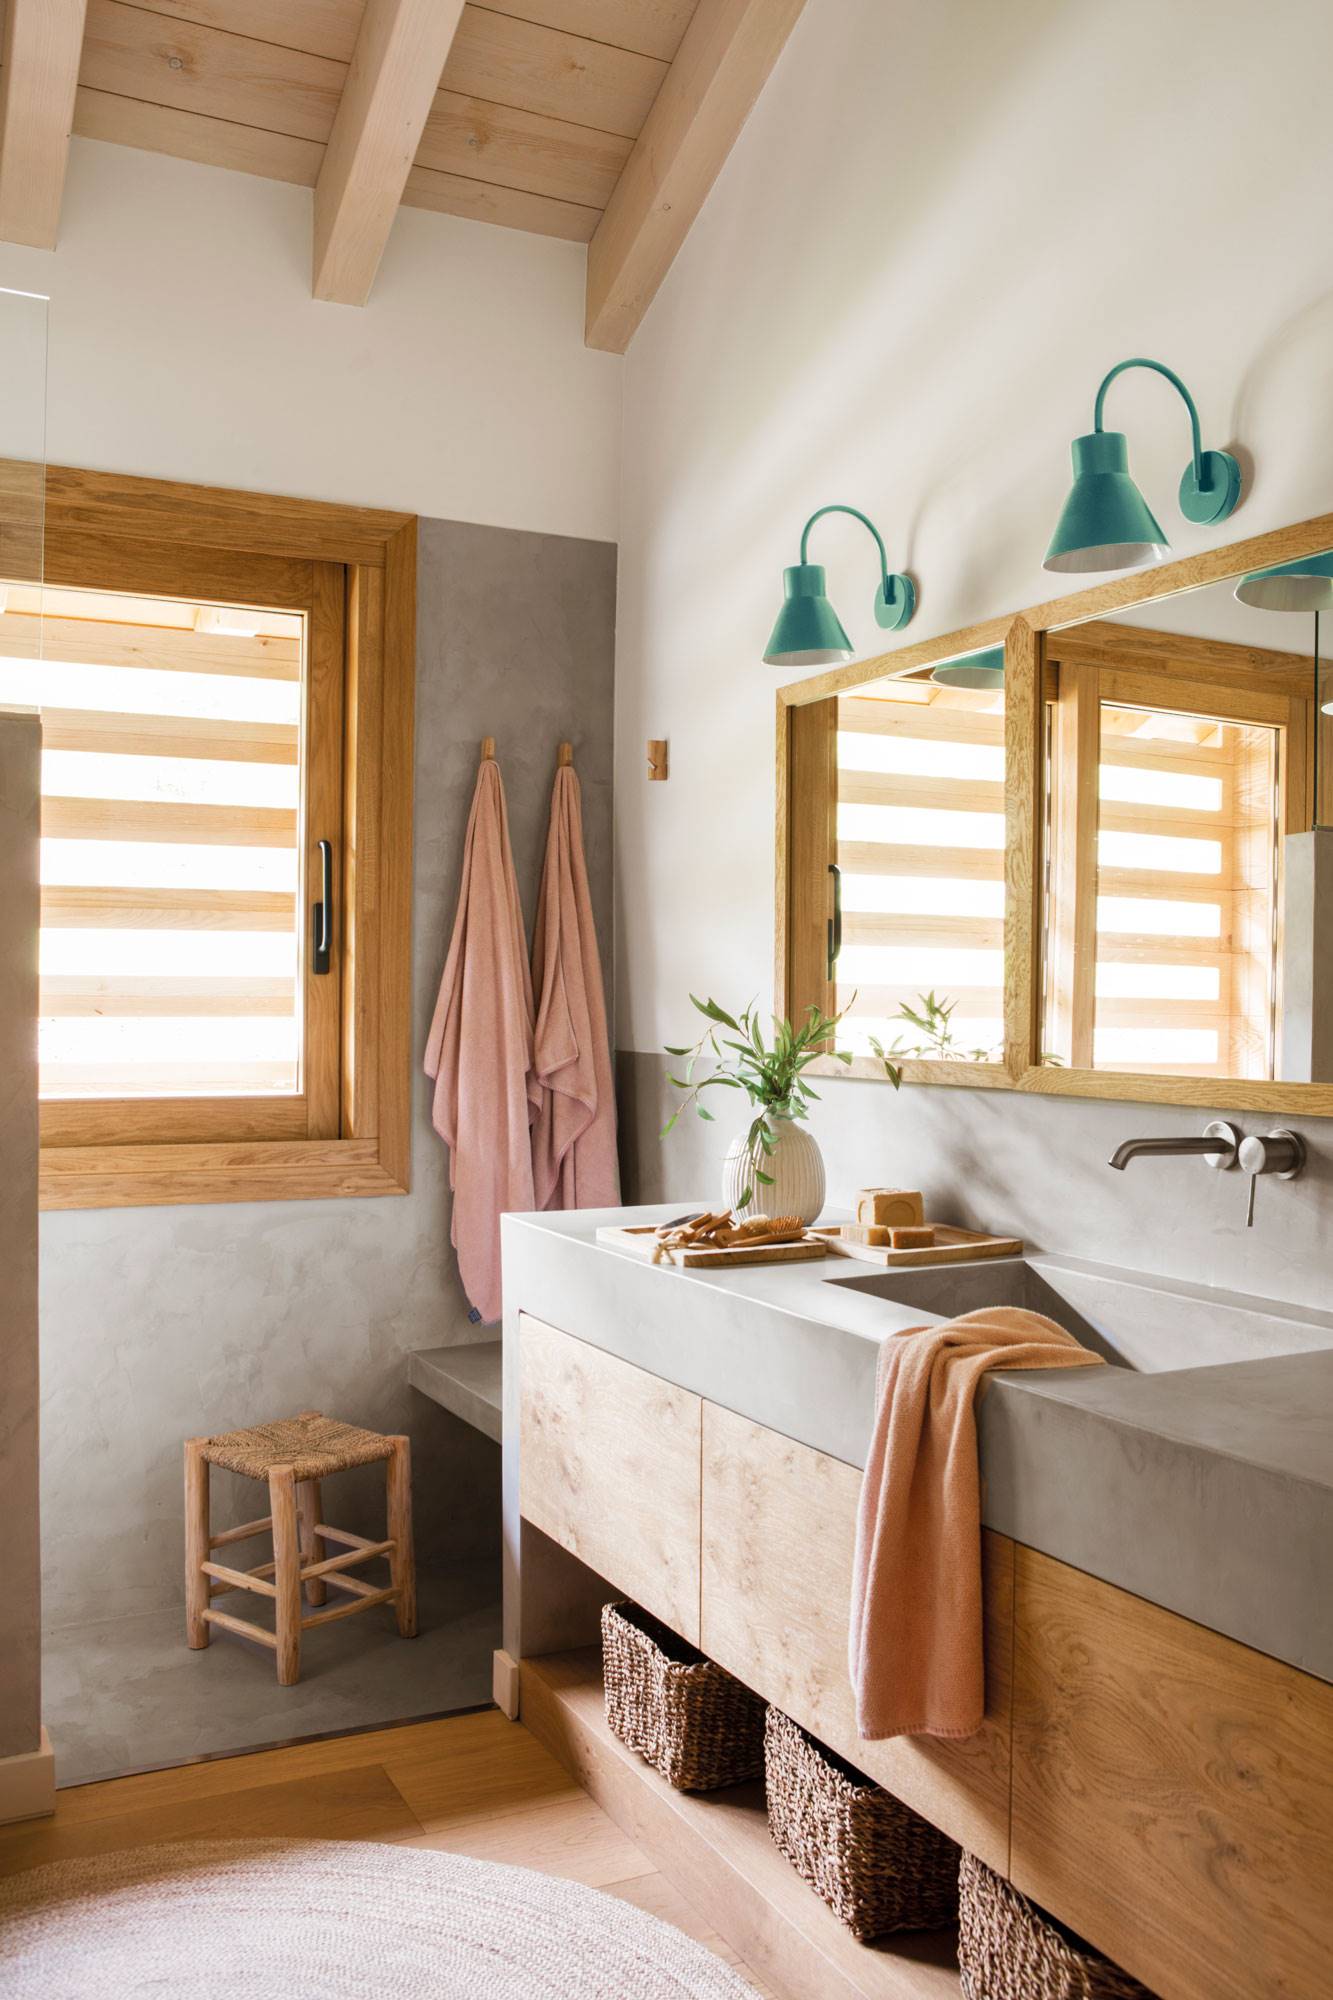 Baño con encimera y lavabo de microcemento, mueble de madera y alfombra de fibra natural.  